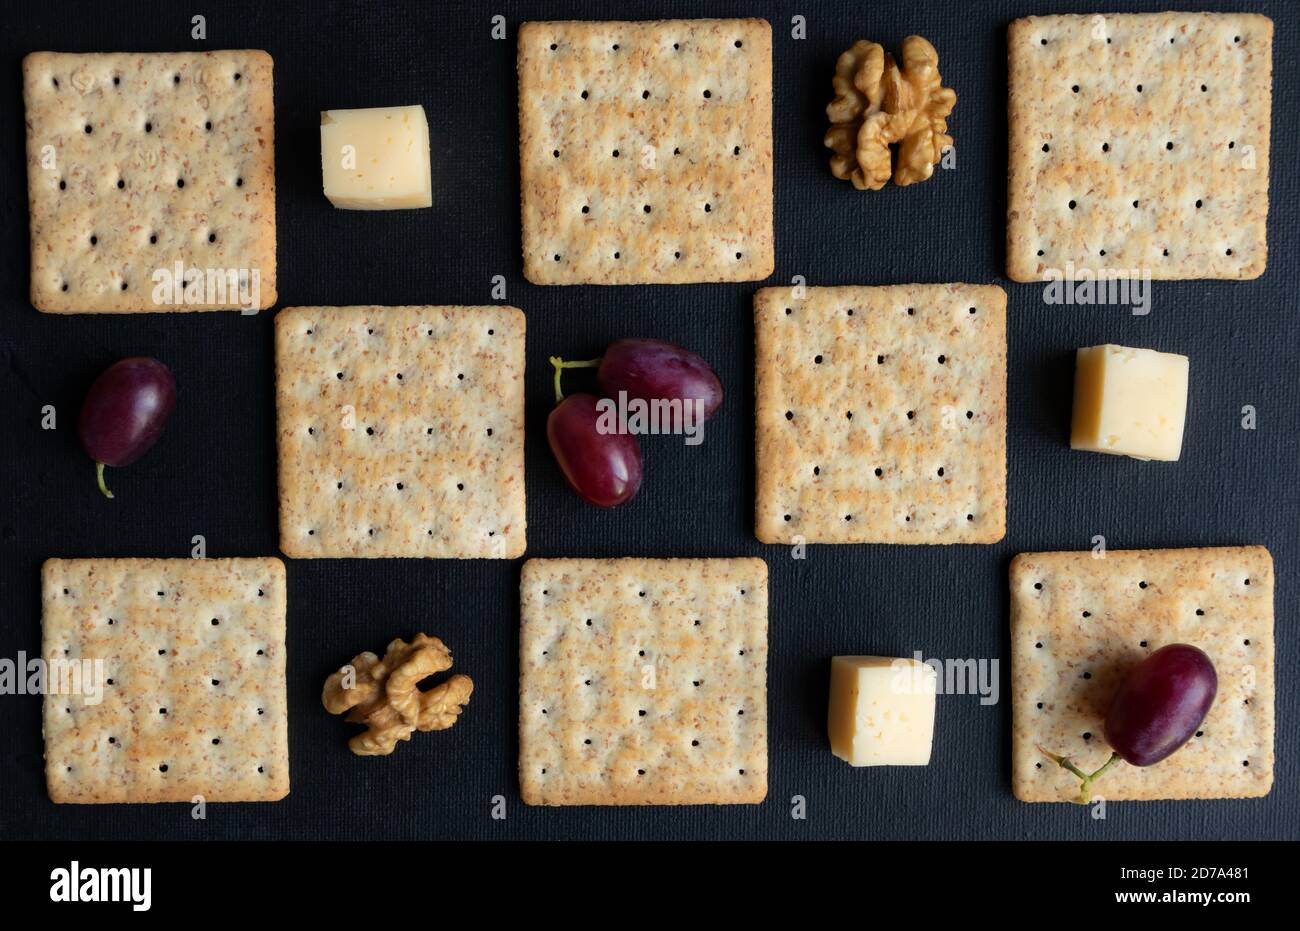 Maasdam Käse, Walnüsse, Kekse und lila Trauben vor einem dunklen Hintergrund gestaffelt. Poster. Stockfoto